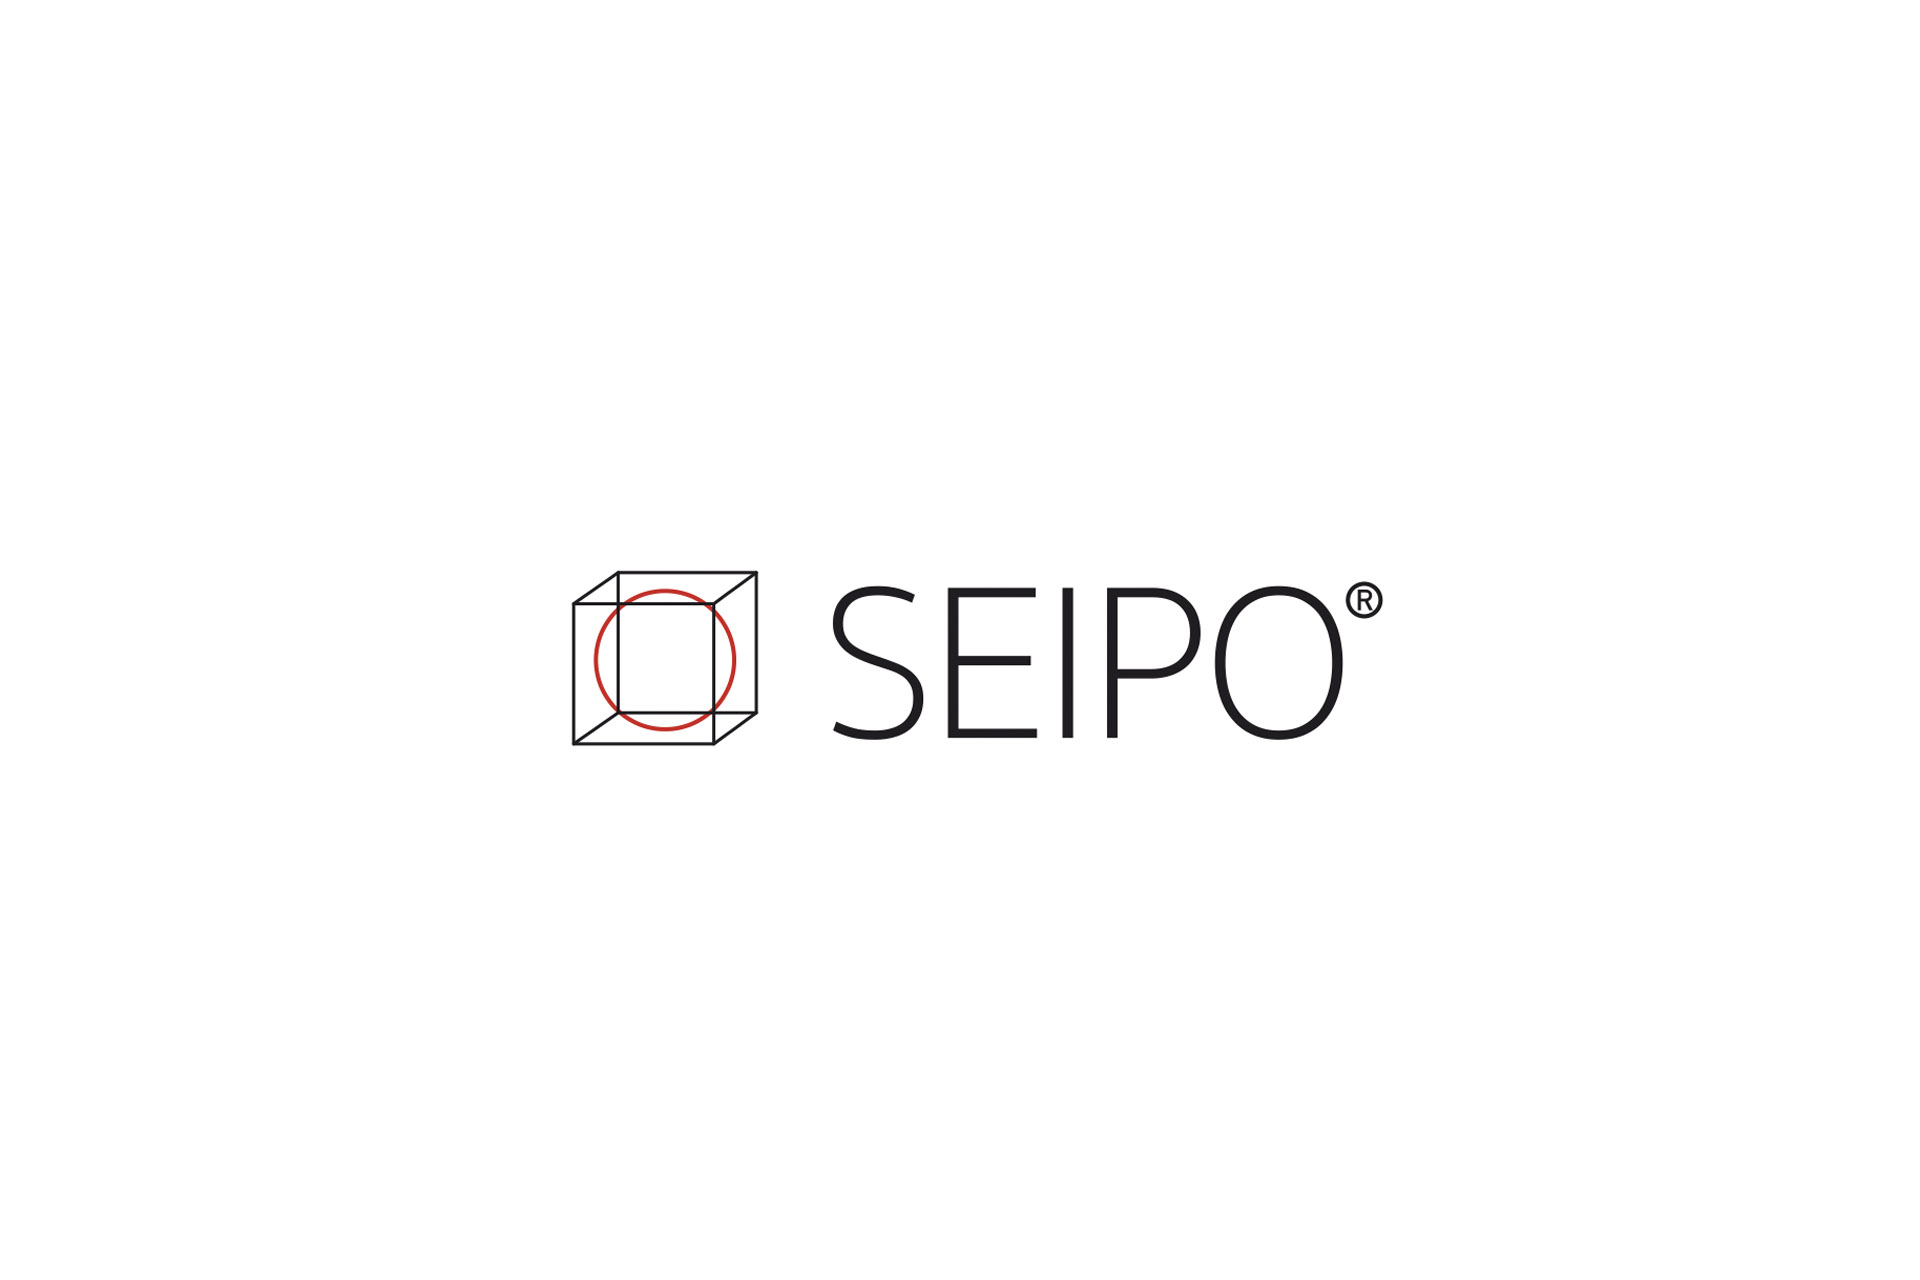 Seipo_03